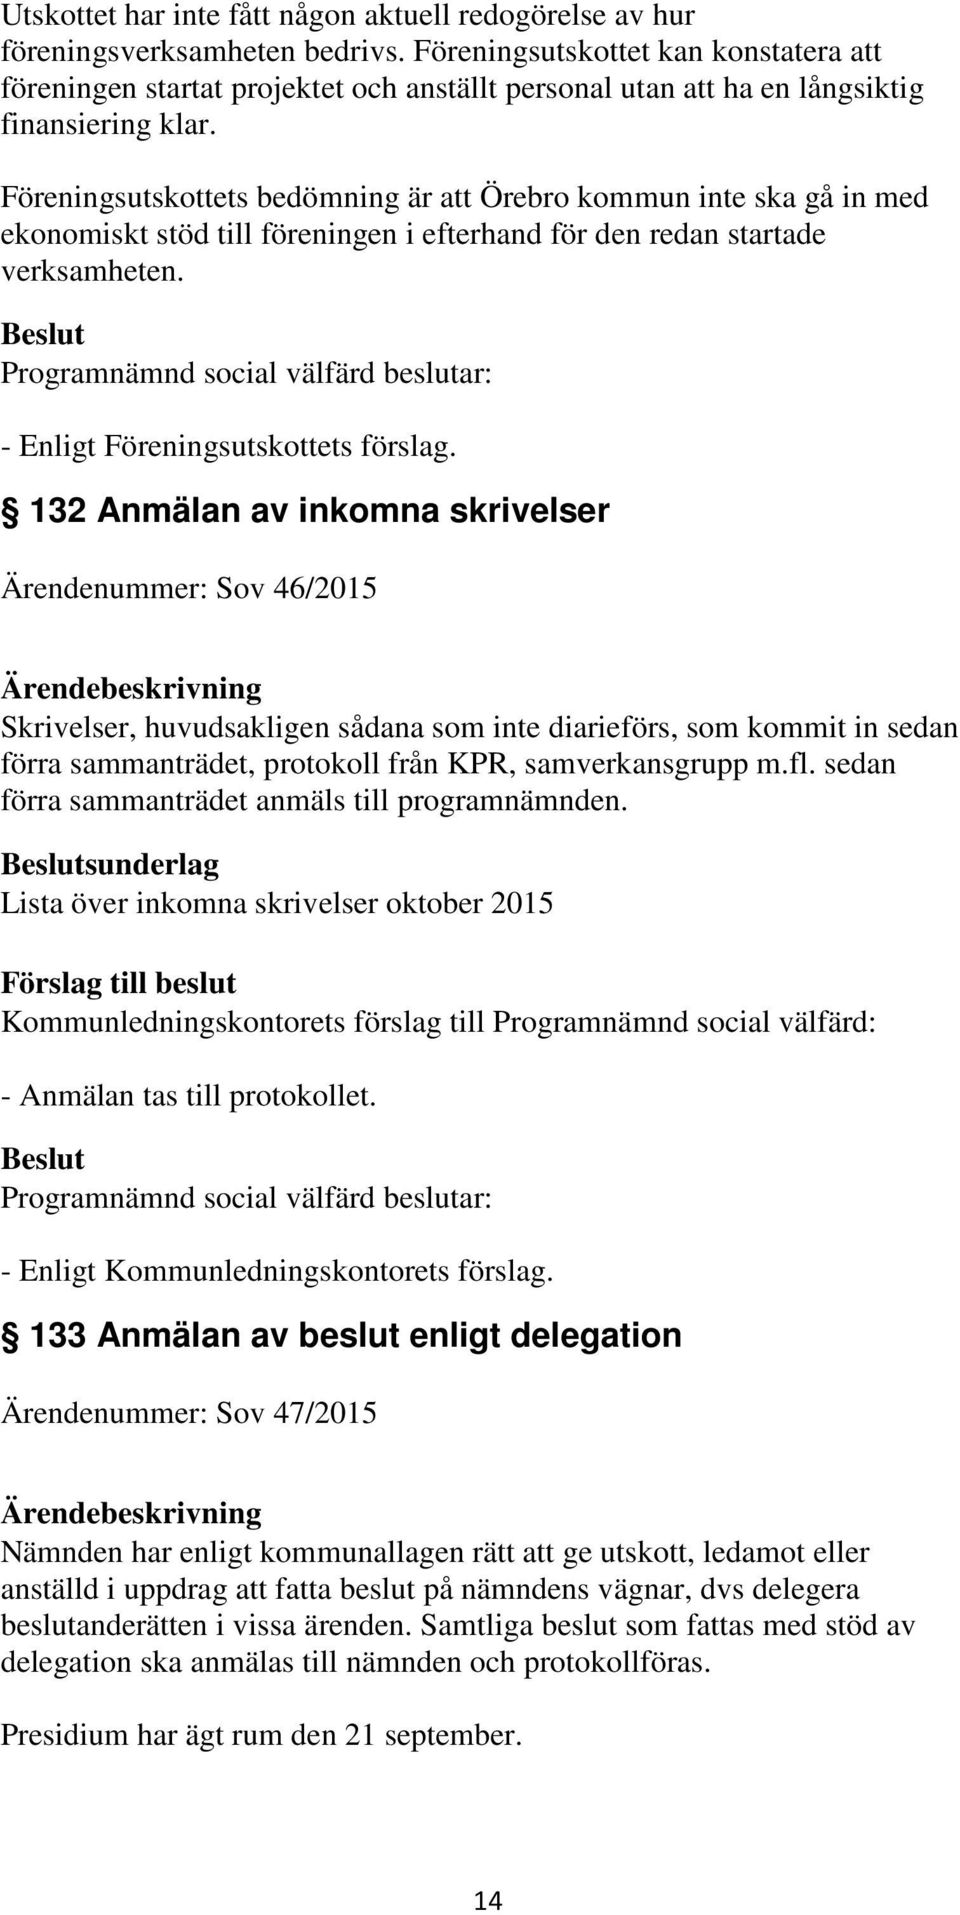 Föreningsutskottets bedömning är att Örebro kommun inte ska gå in med ekonomiskt stöd till föreningen i efterhand för den redan startade verksamheten. - Enligt Föreningsutskottets förslag.